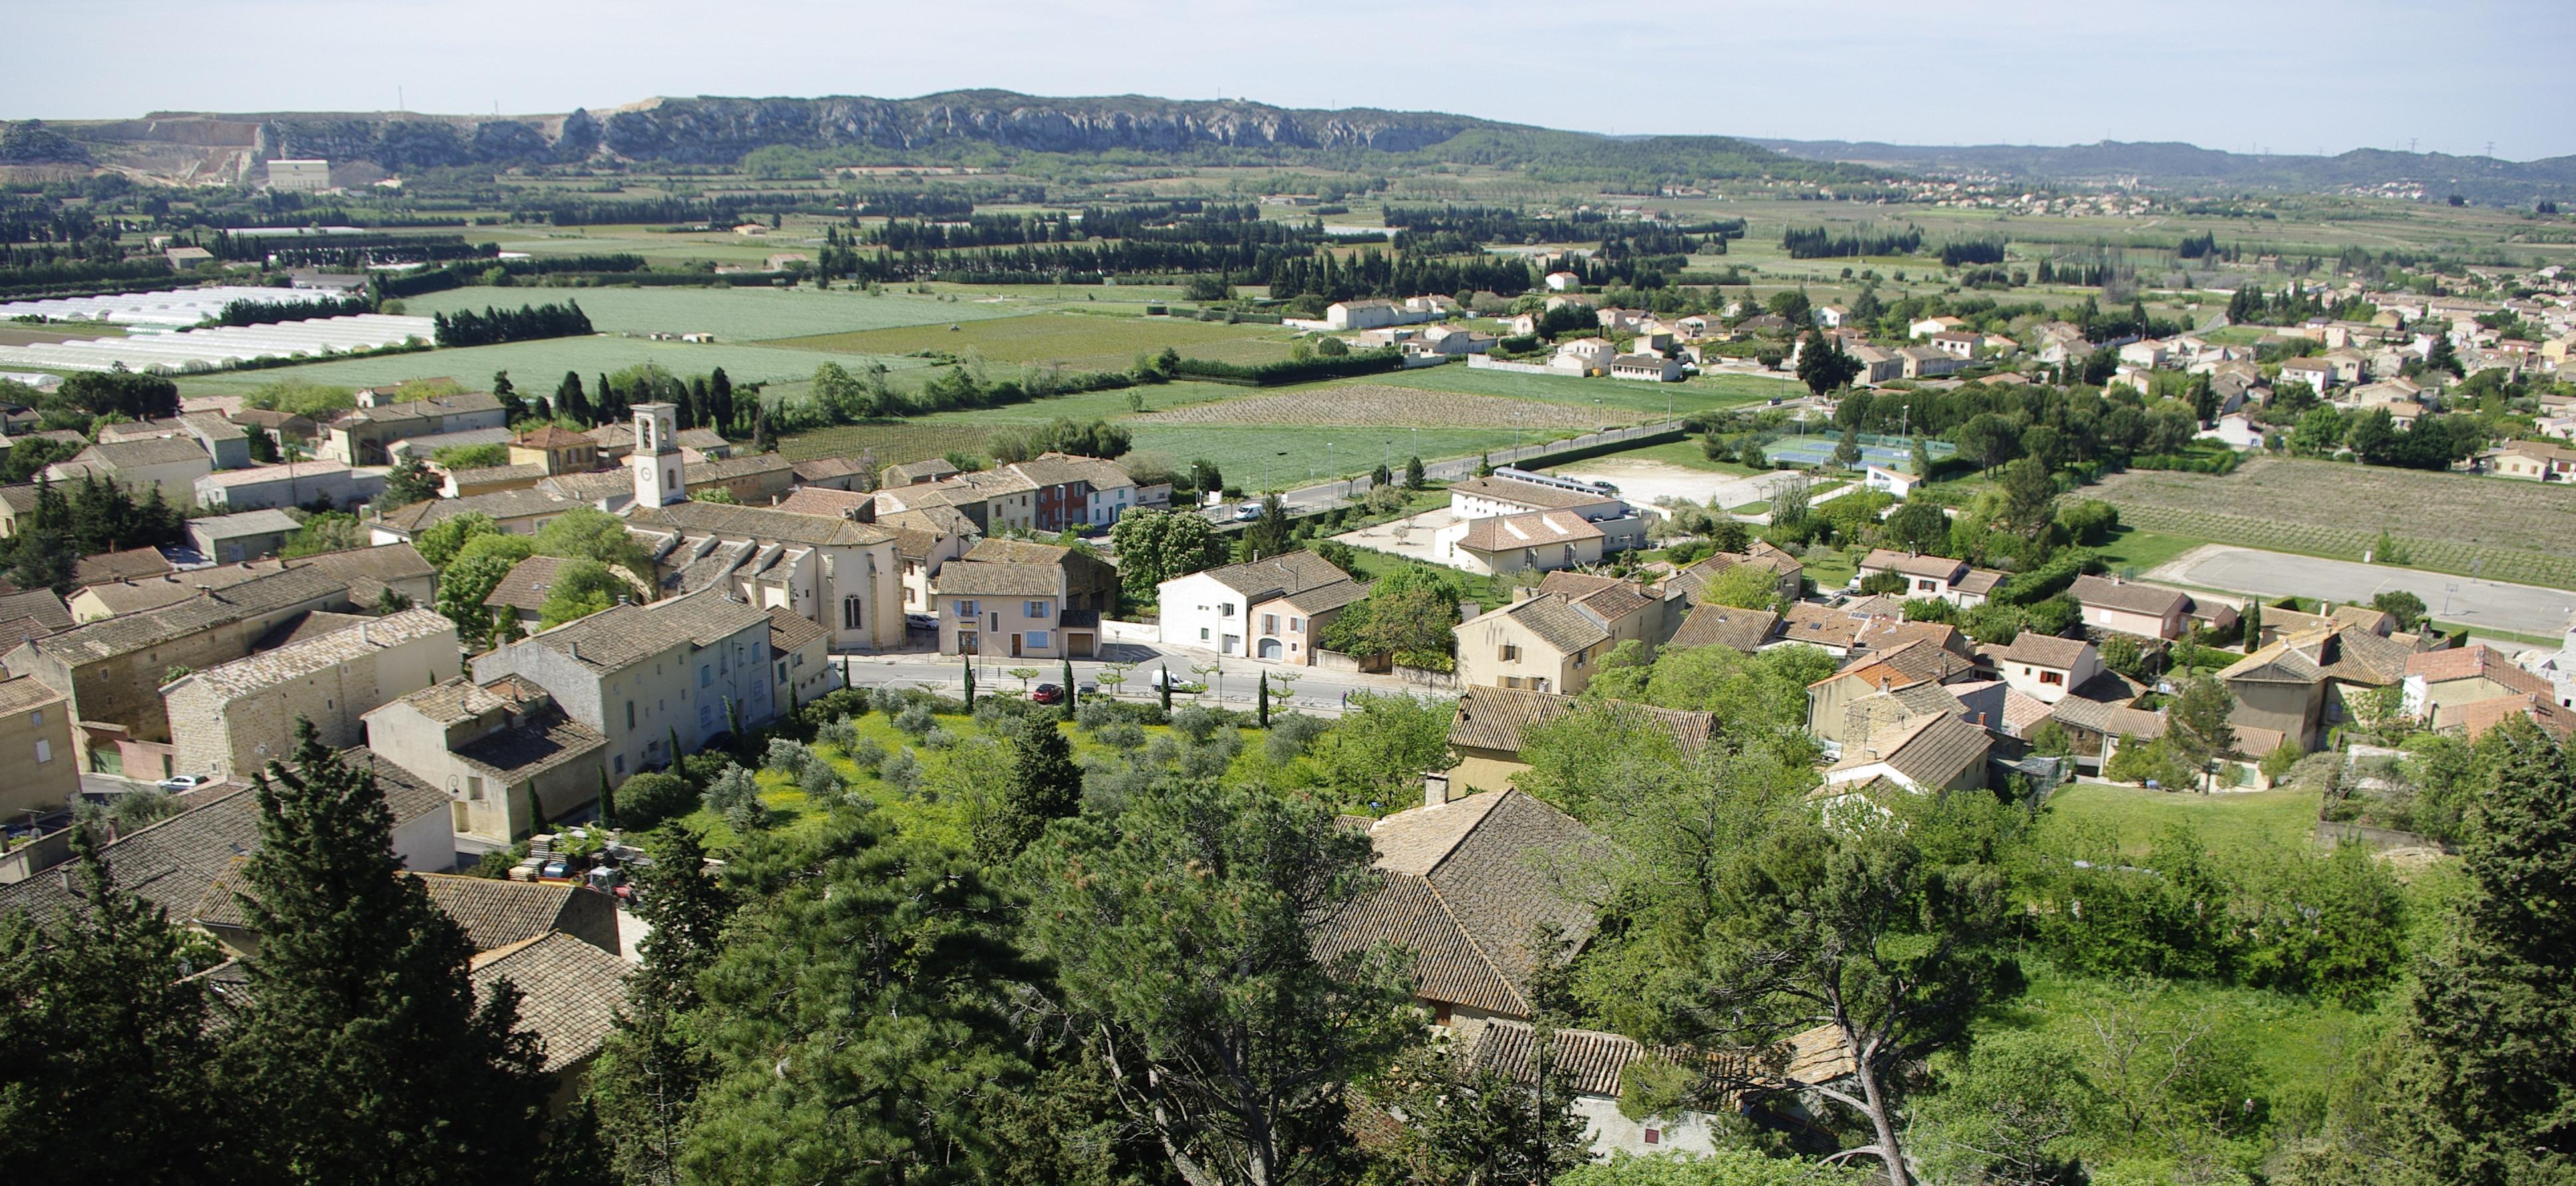 Montfaucon : Avis de consultation publique aire AOC Côtes du Rhône